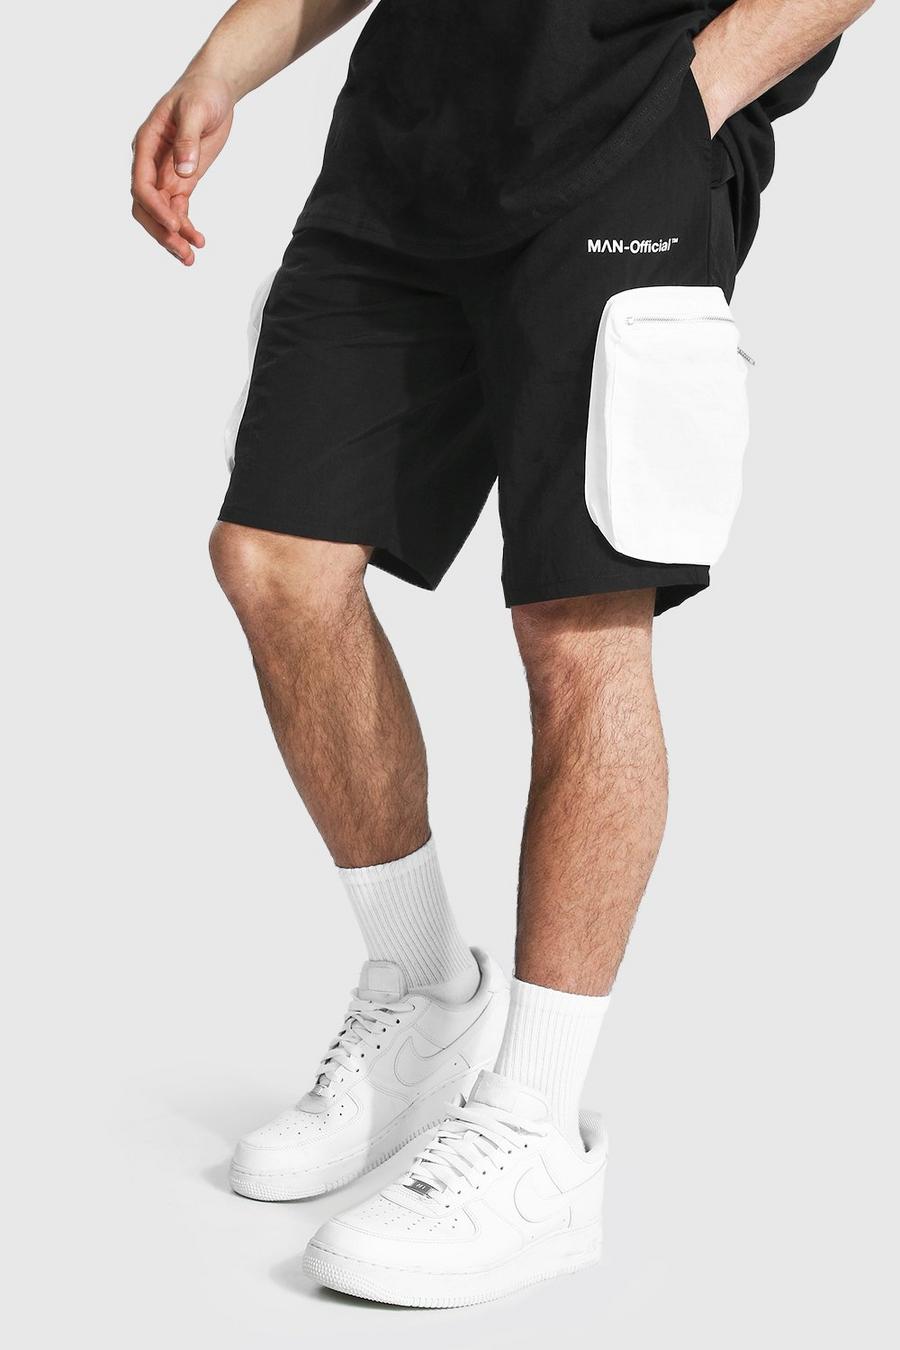 Shell Cargo-Shorts in Knitteroptik mit 3D-Taschen und Man-Print, Schwarz image number 1